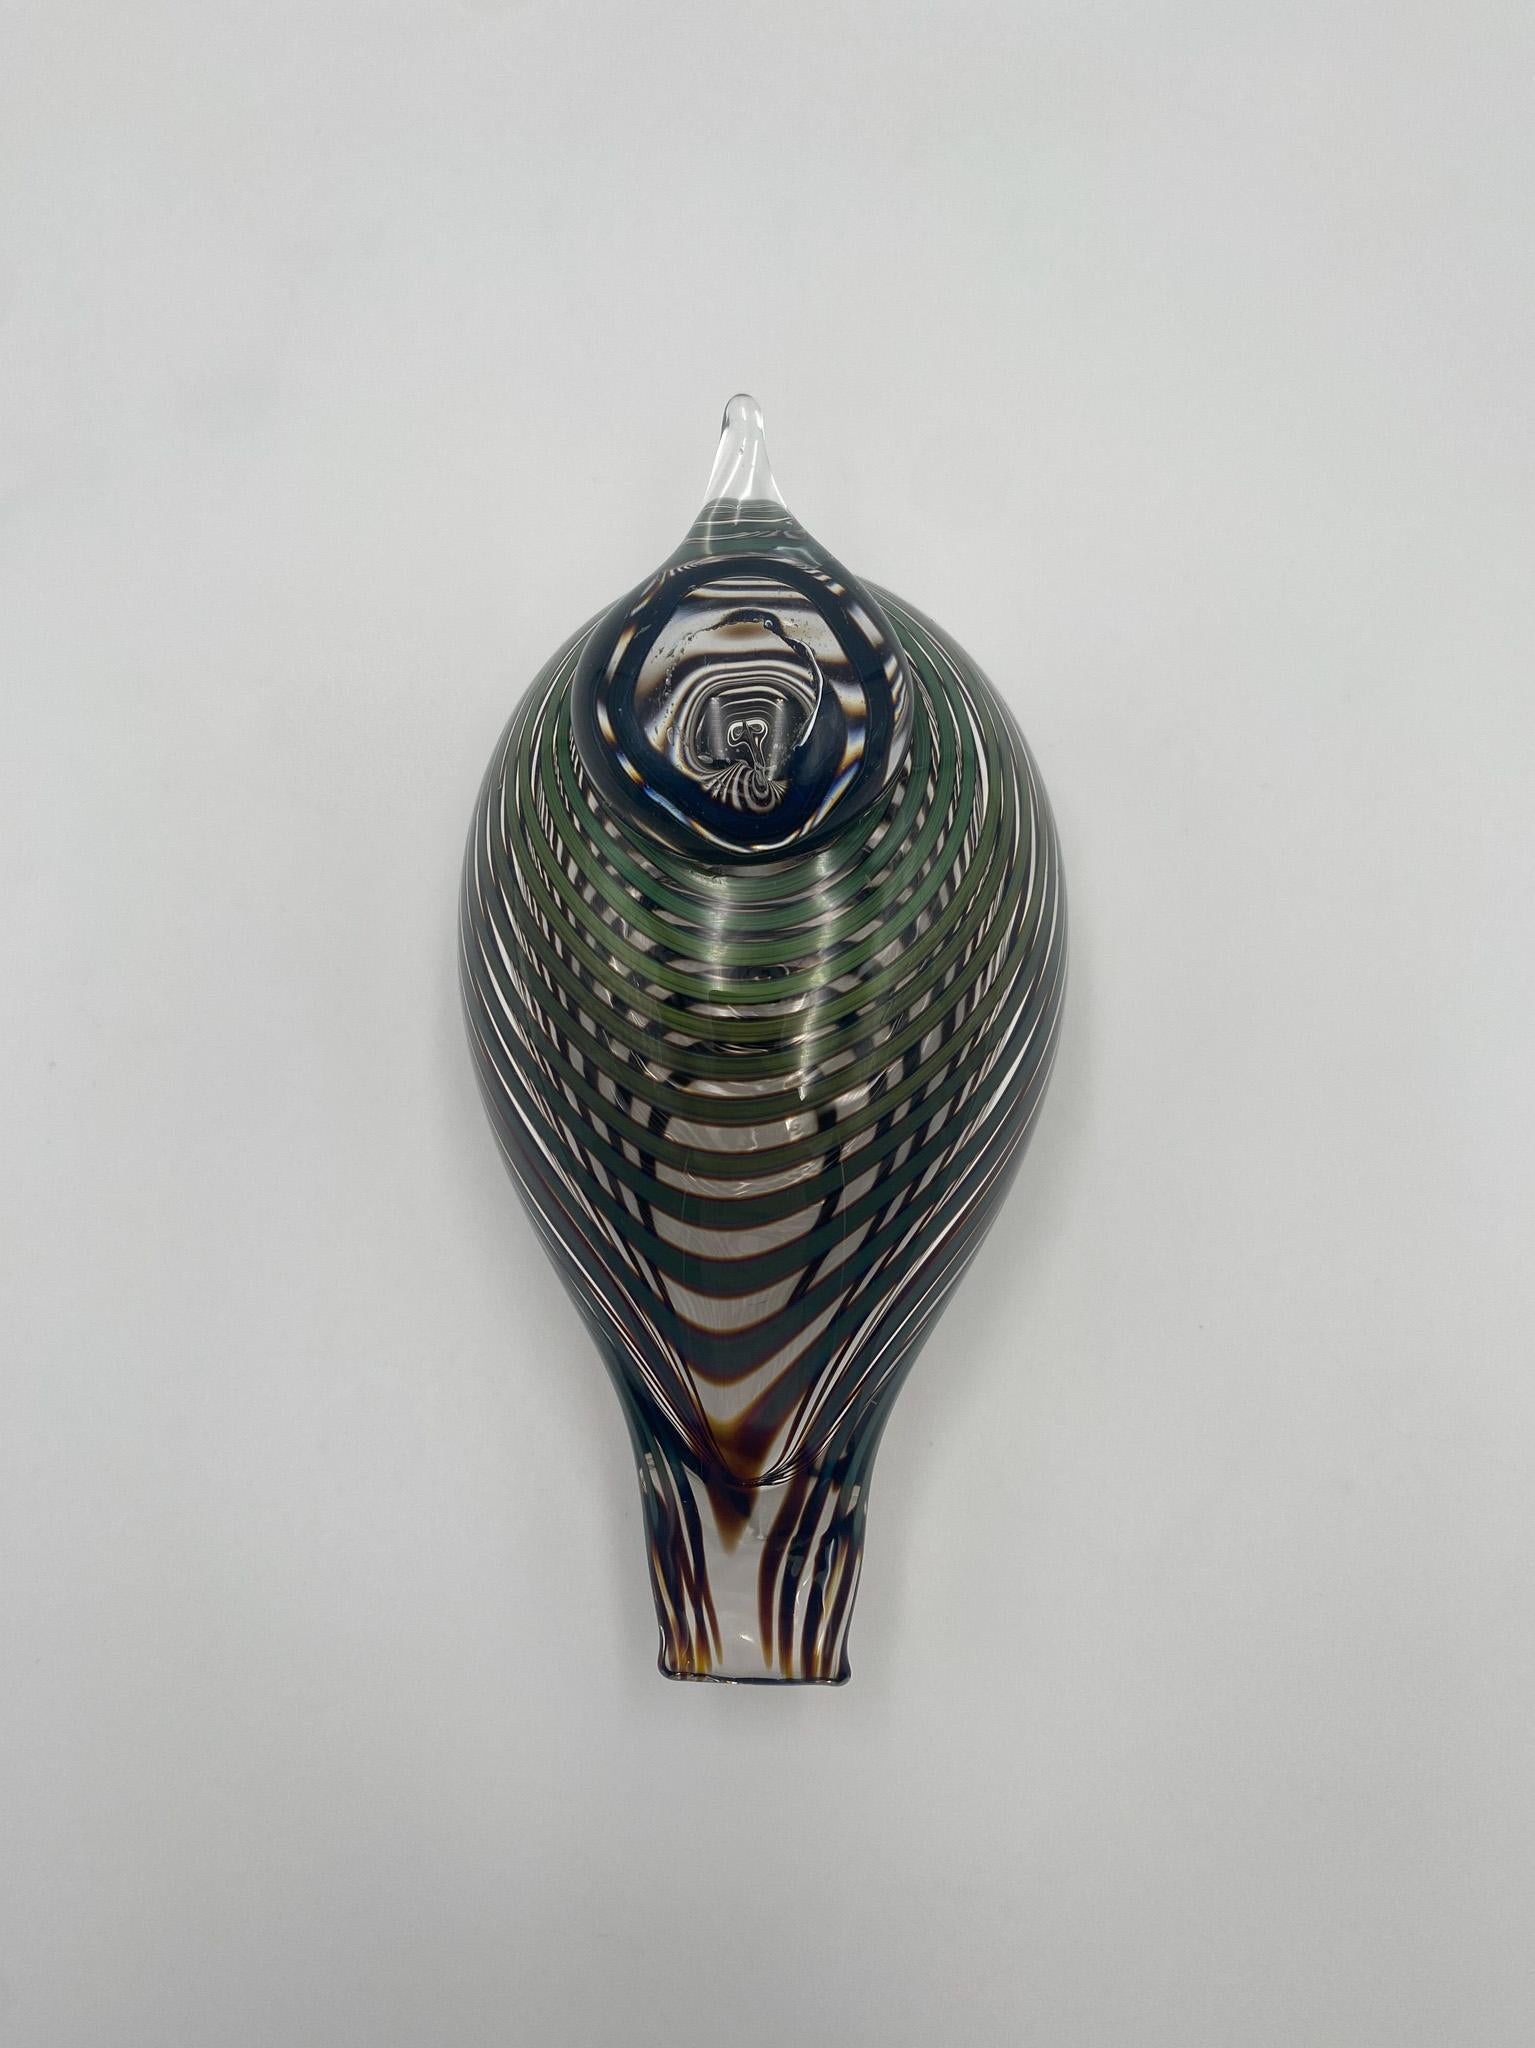 Oiva Toikka Art Glass Bird Sculpture for Iittala of Finland For Sale 2